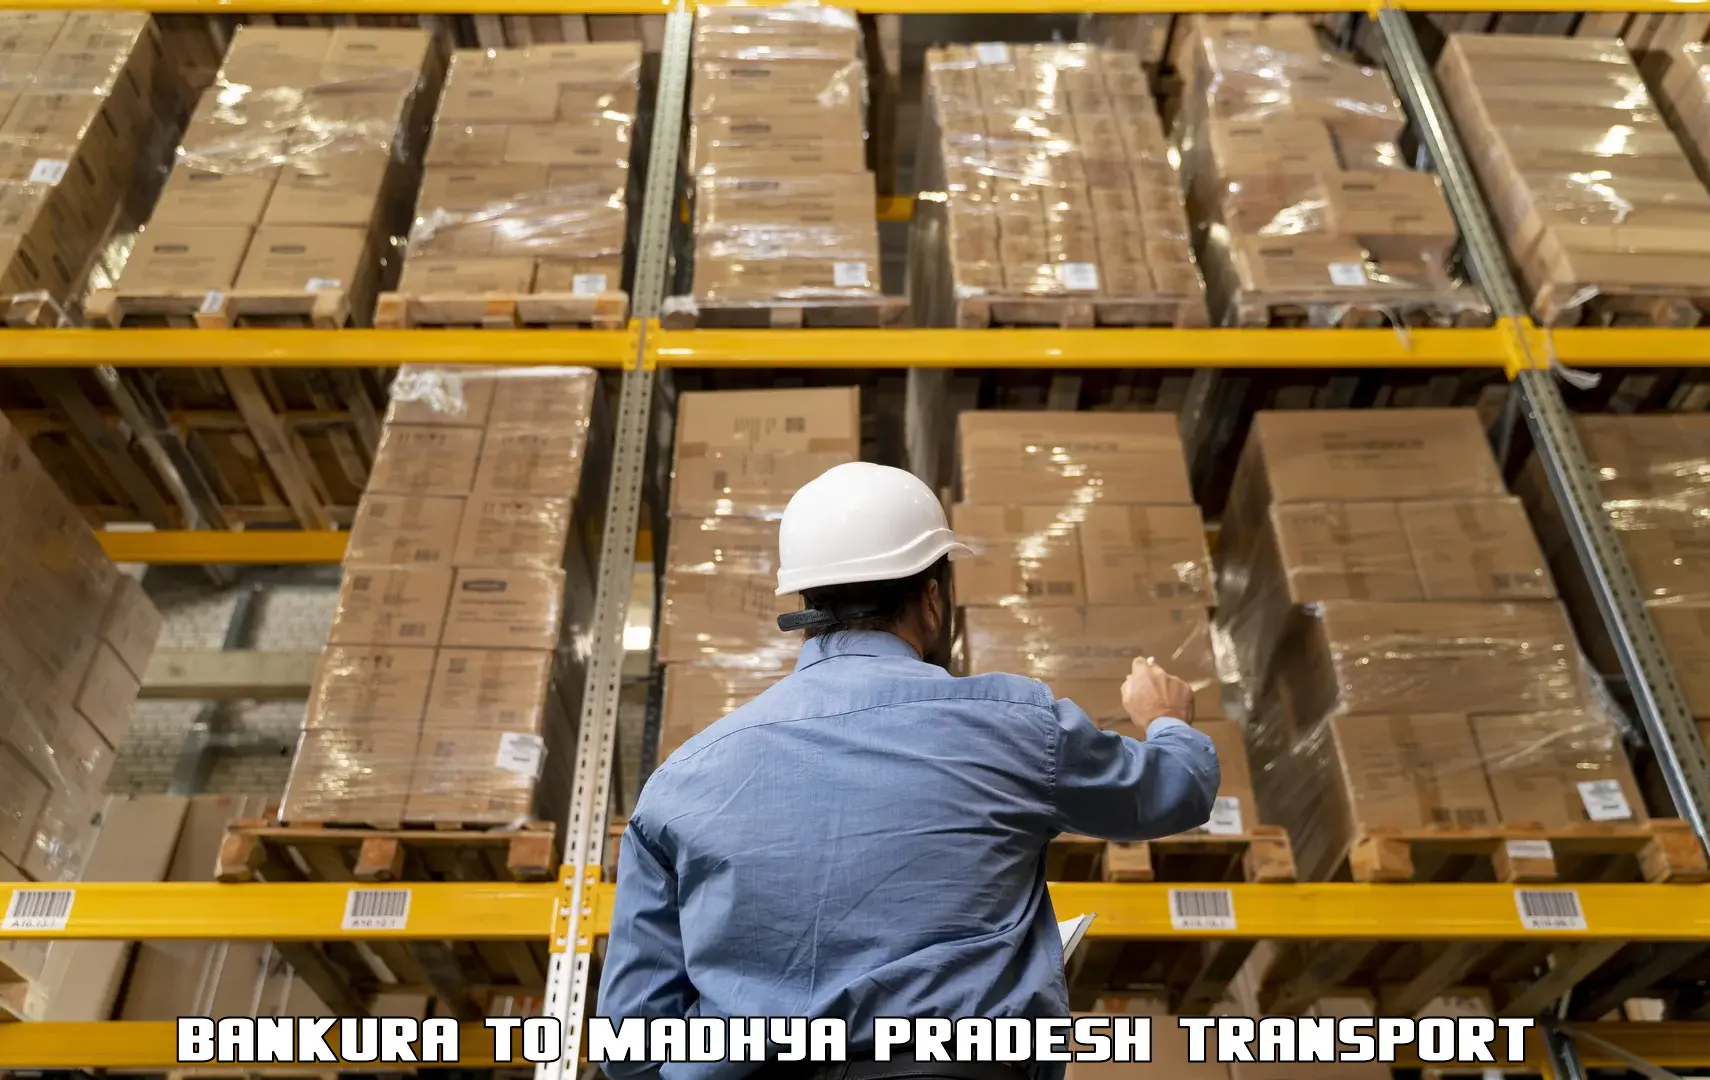 International cargo transportation services Bankura to Jaisinghnagar